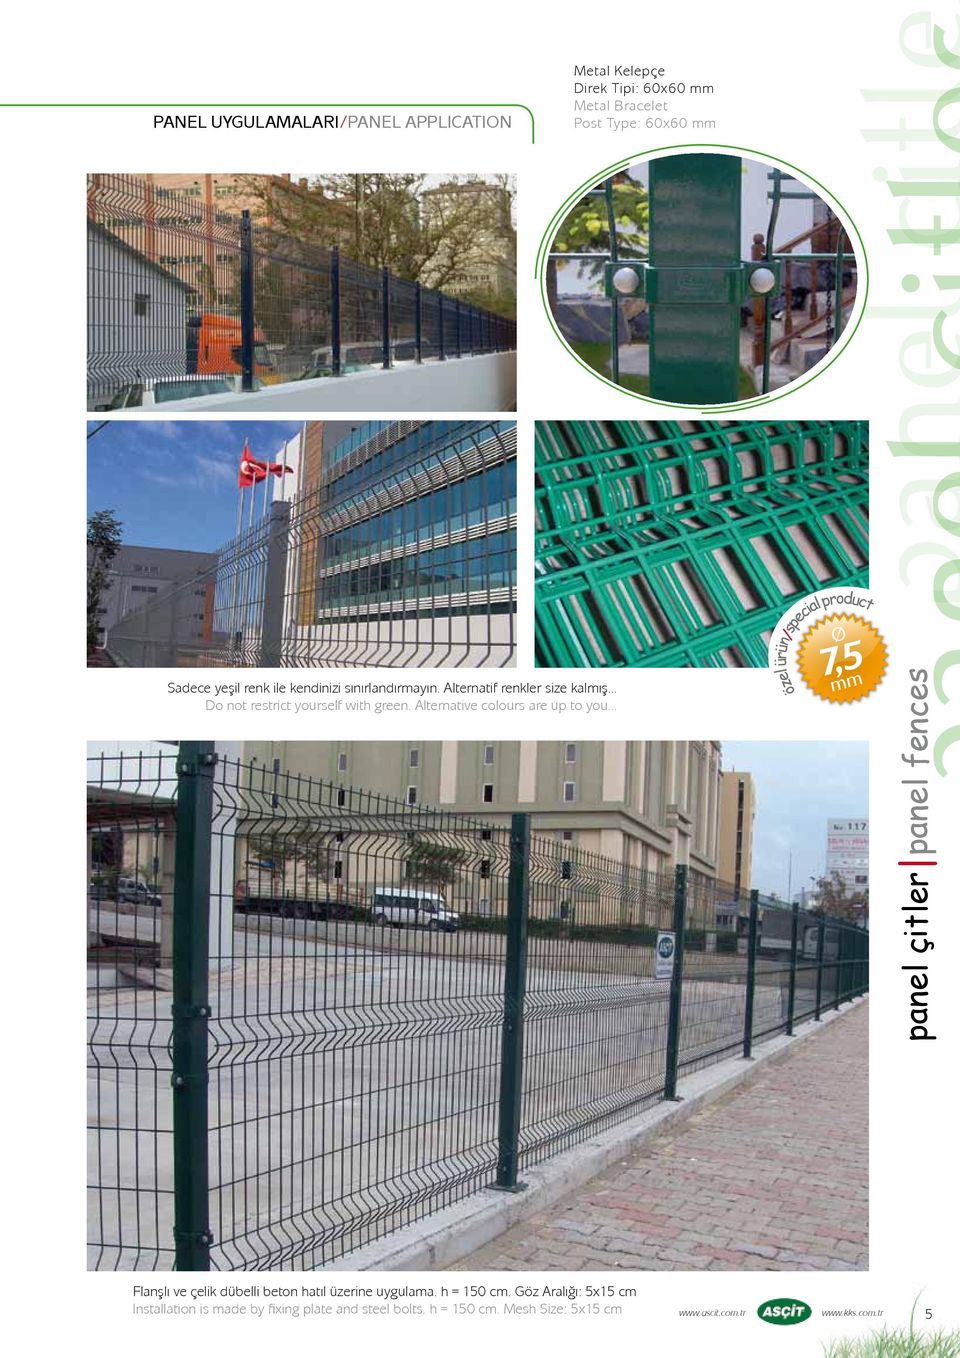 .. Ø 7,5 mm özel ürün / special product panel çitler panel fences Flanşlı ve çelik dübelli beton hatıl üzerine uygulama. h = 150 cm.